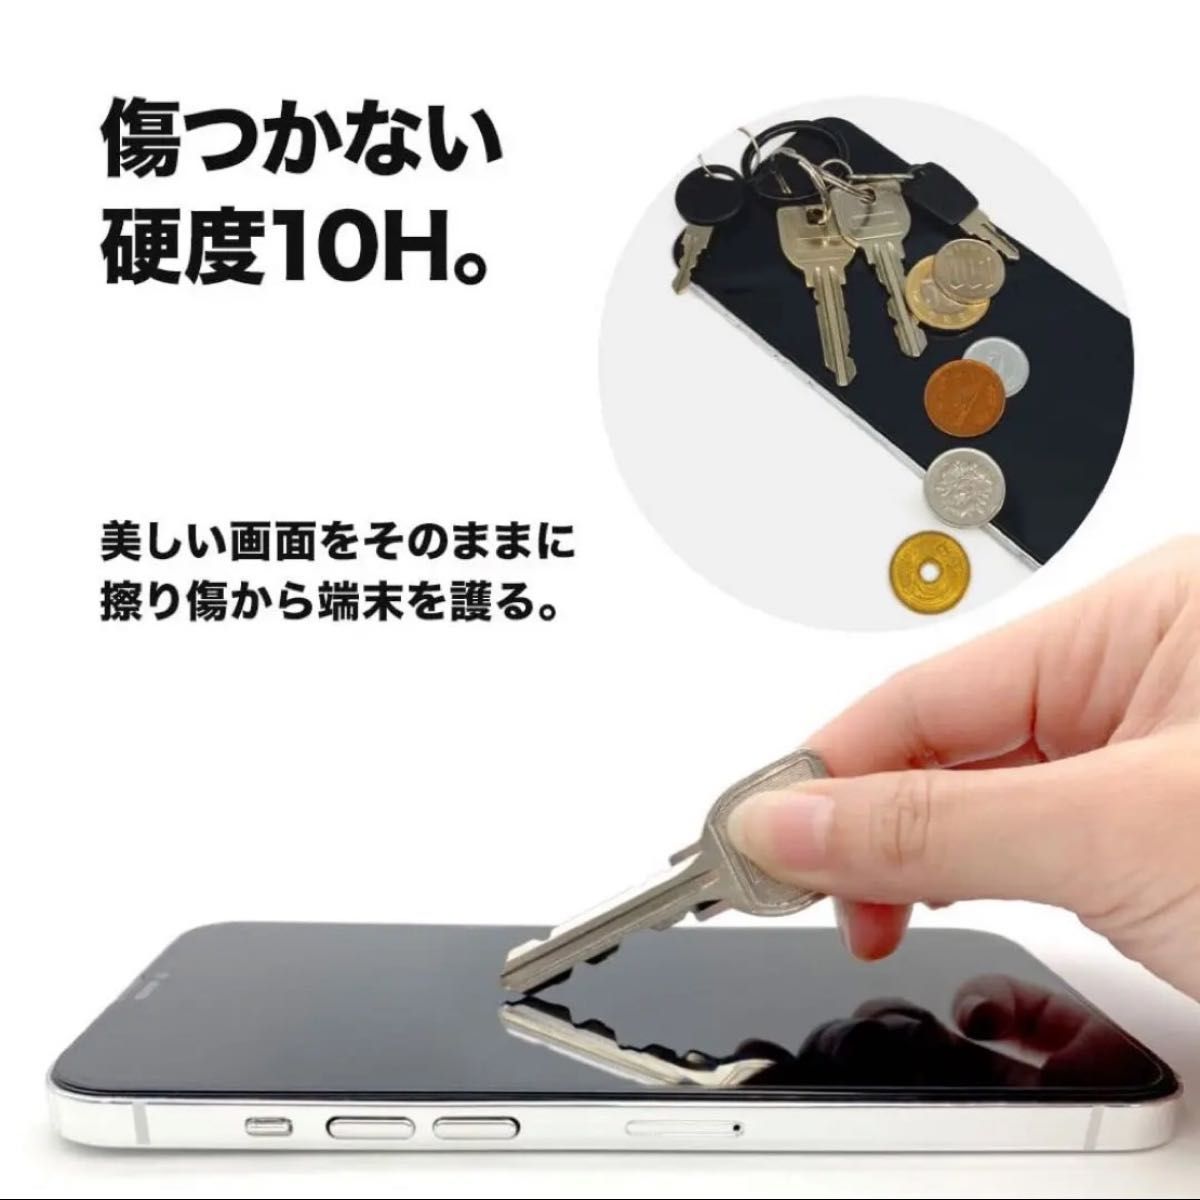 Toride iPhone14 Pro Max 2022 3眼6.7inch用 ガラスフィルム